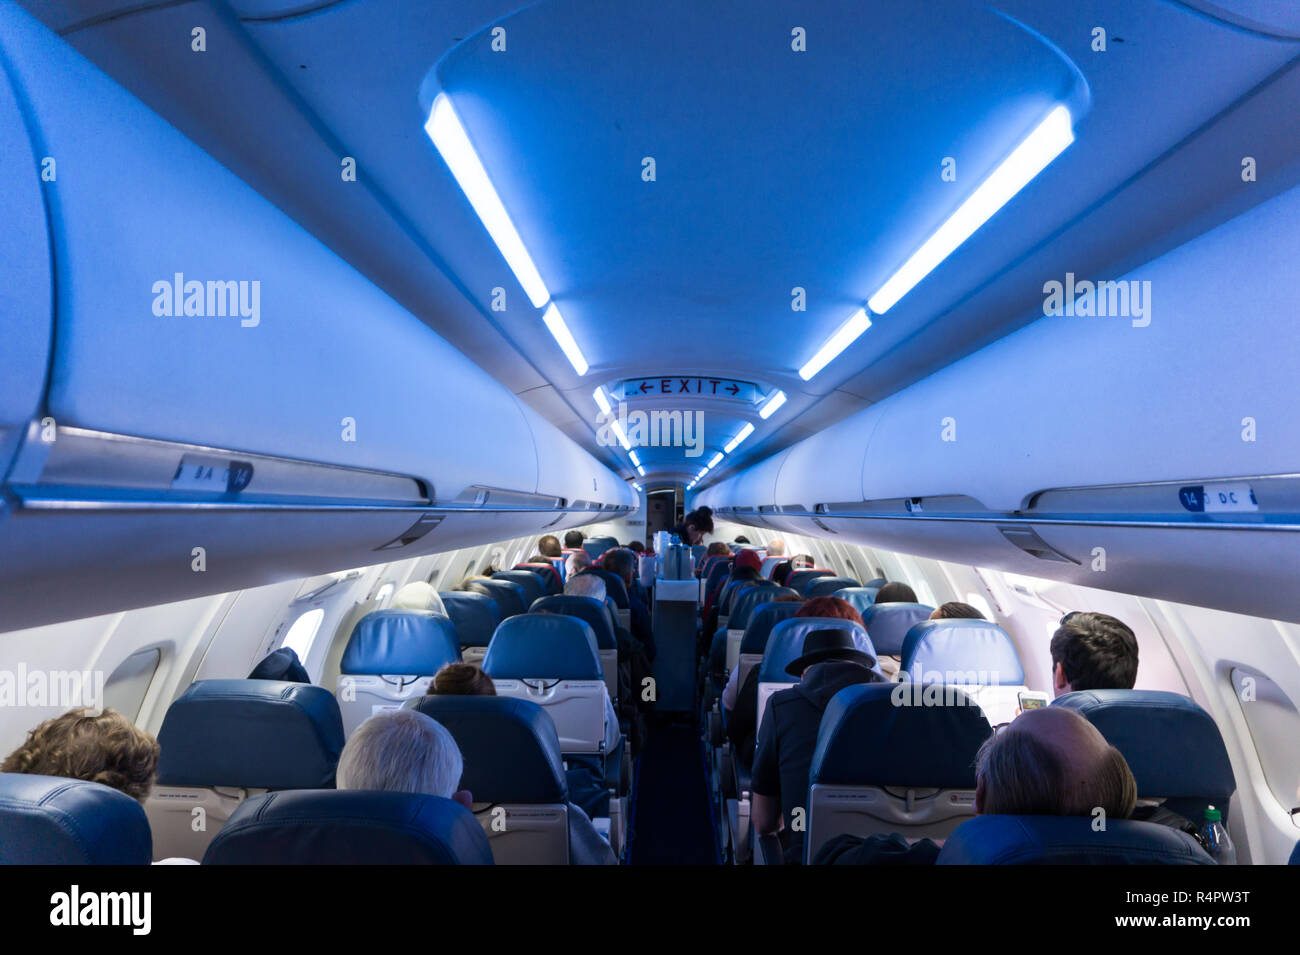 Innenraum der Flugzeug voller sitzende Fahrgäste im Flug mit EXIT Schild deutlich sichtbar Stockfoto